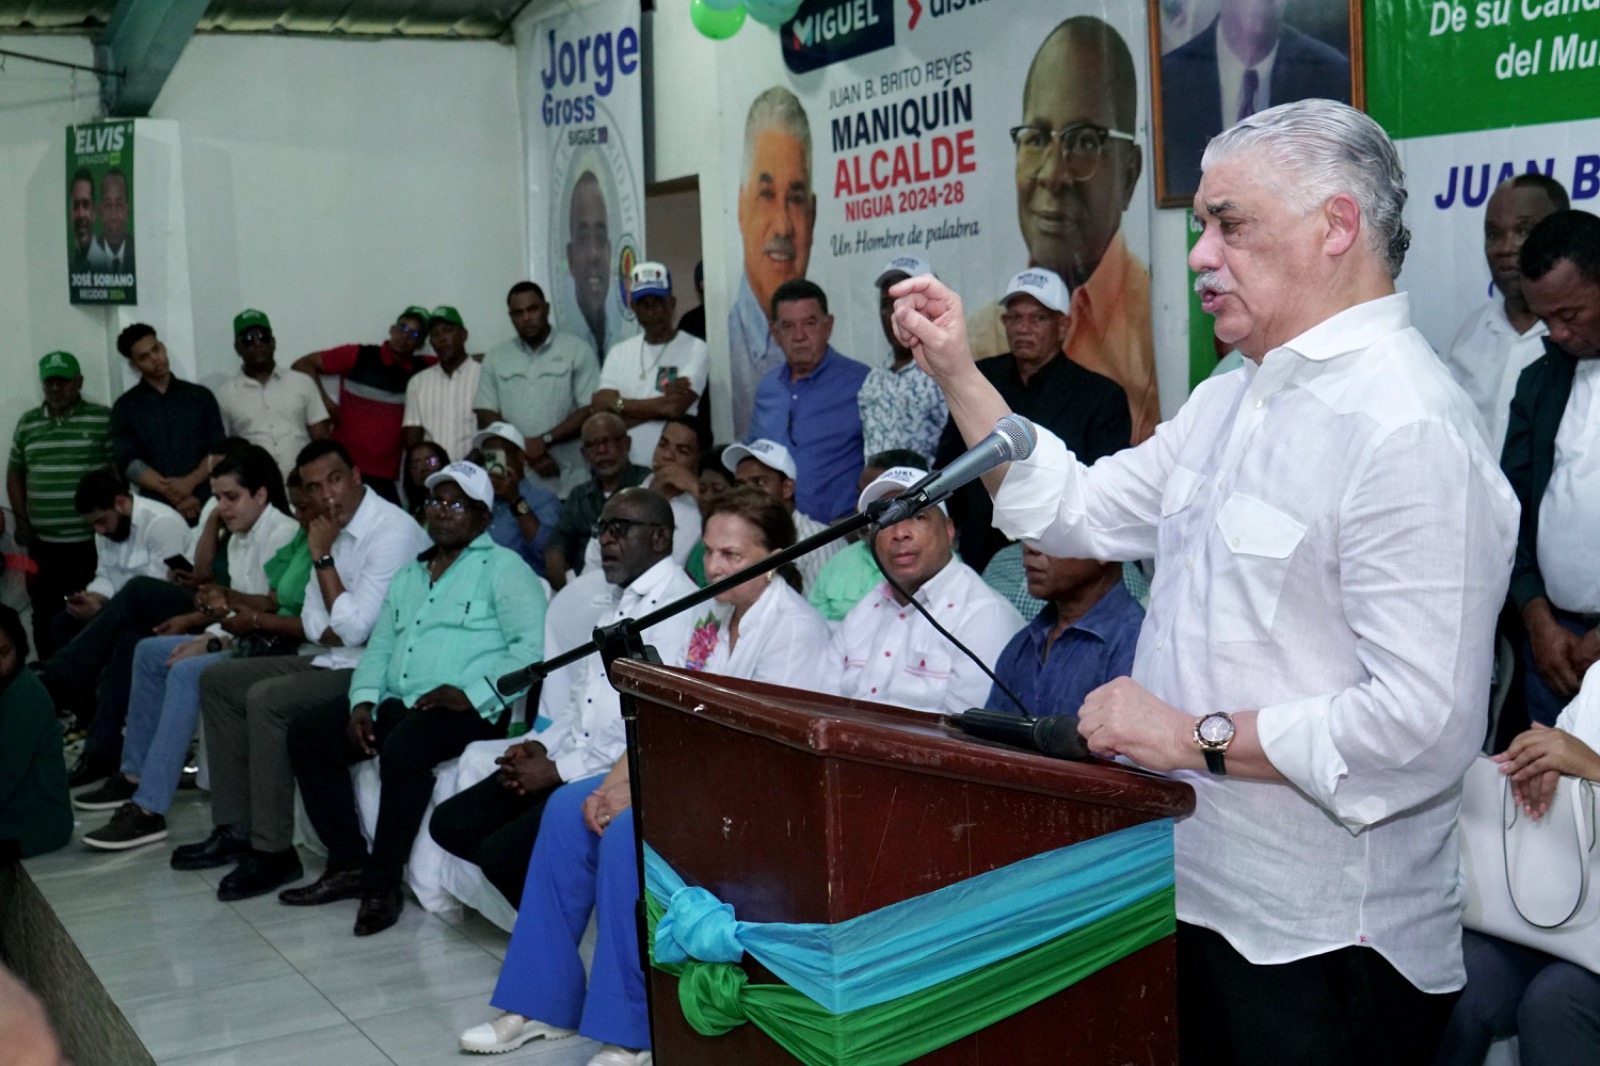 Miguel Vargas: “Los dominicanos hemos podido confirmar el deterioro y falacia de este gobierno”